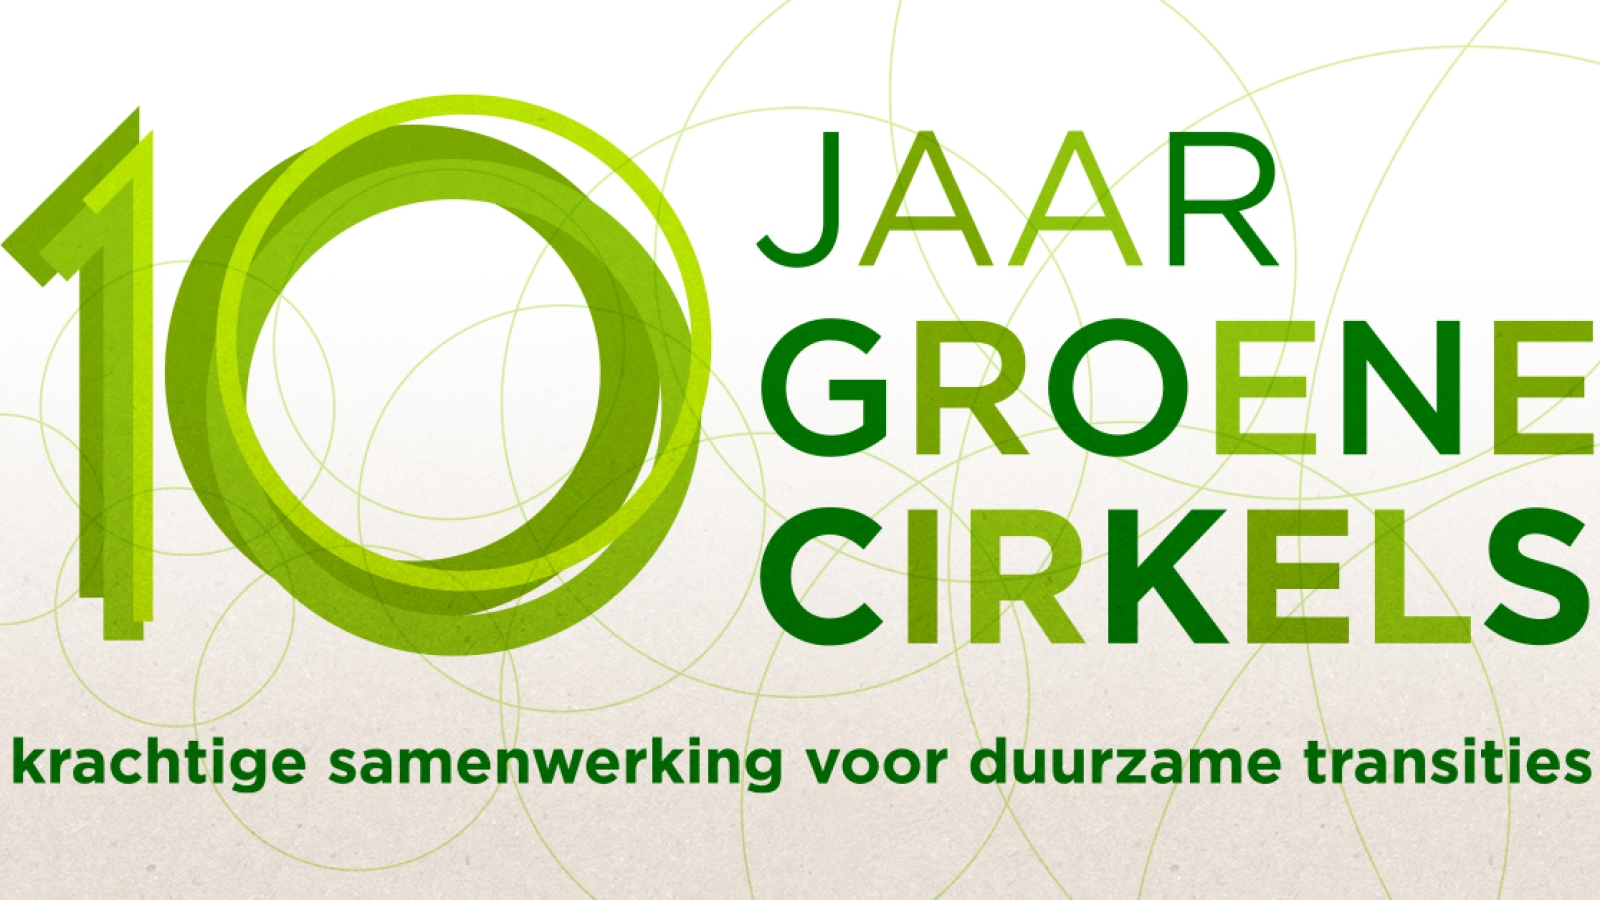 Logo 10 jaar Groene Cirkels